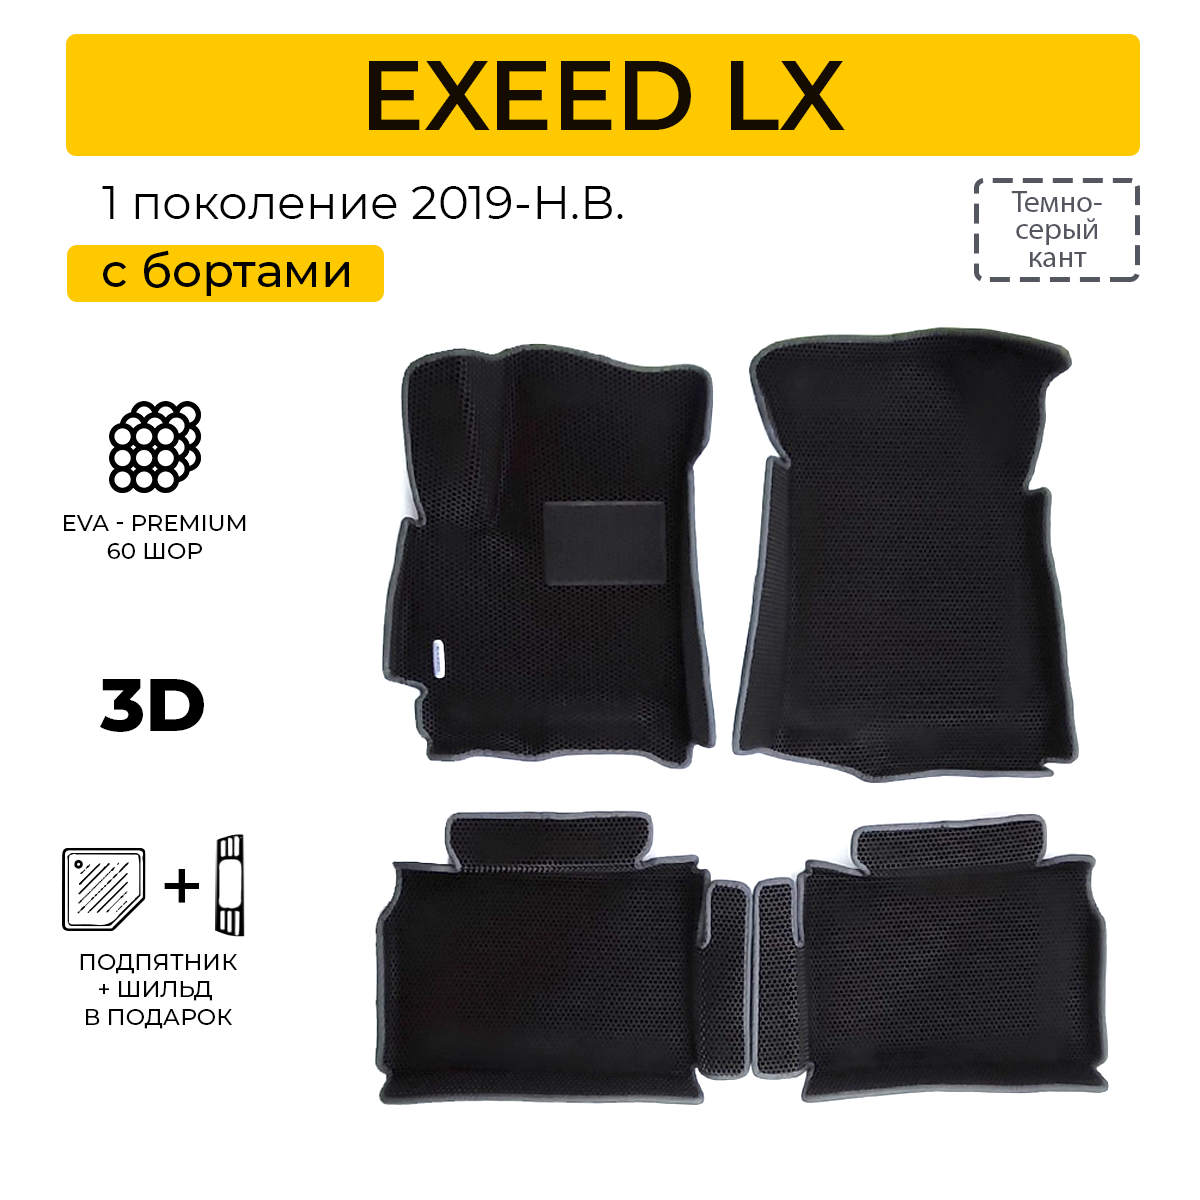 EVA коврики для автомобиля EXEED LX (Эксид LX) 2019-Н. В. с бортами, коврики эва в салон